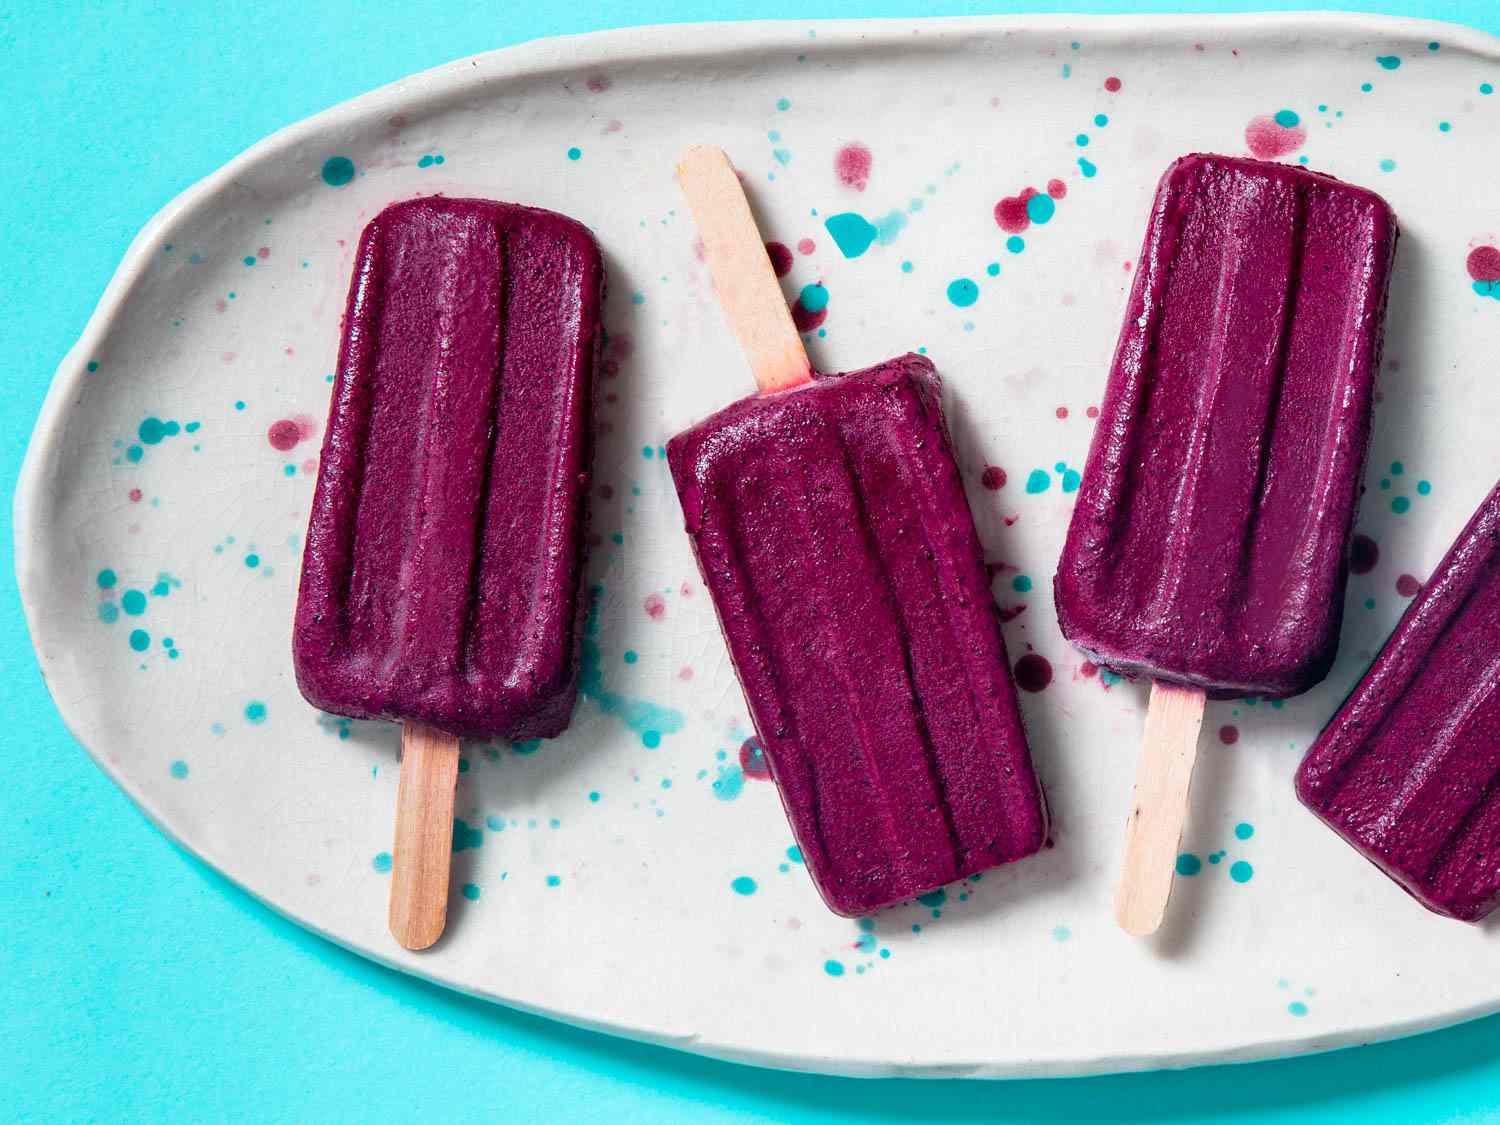 20200811-yogurt-fruit-popsicles-blueberry-vicky-wasik-9